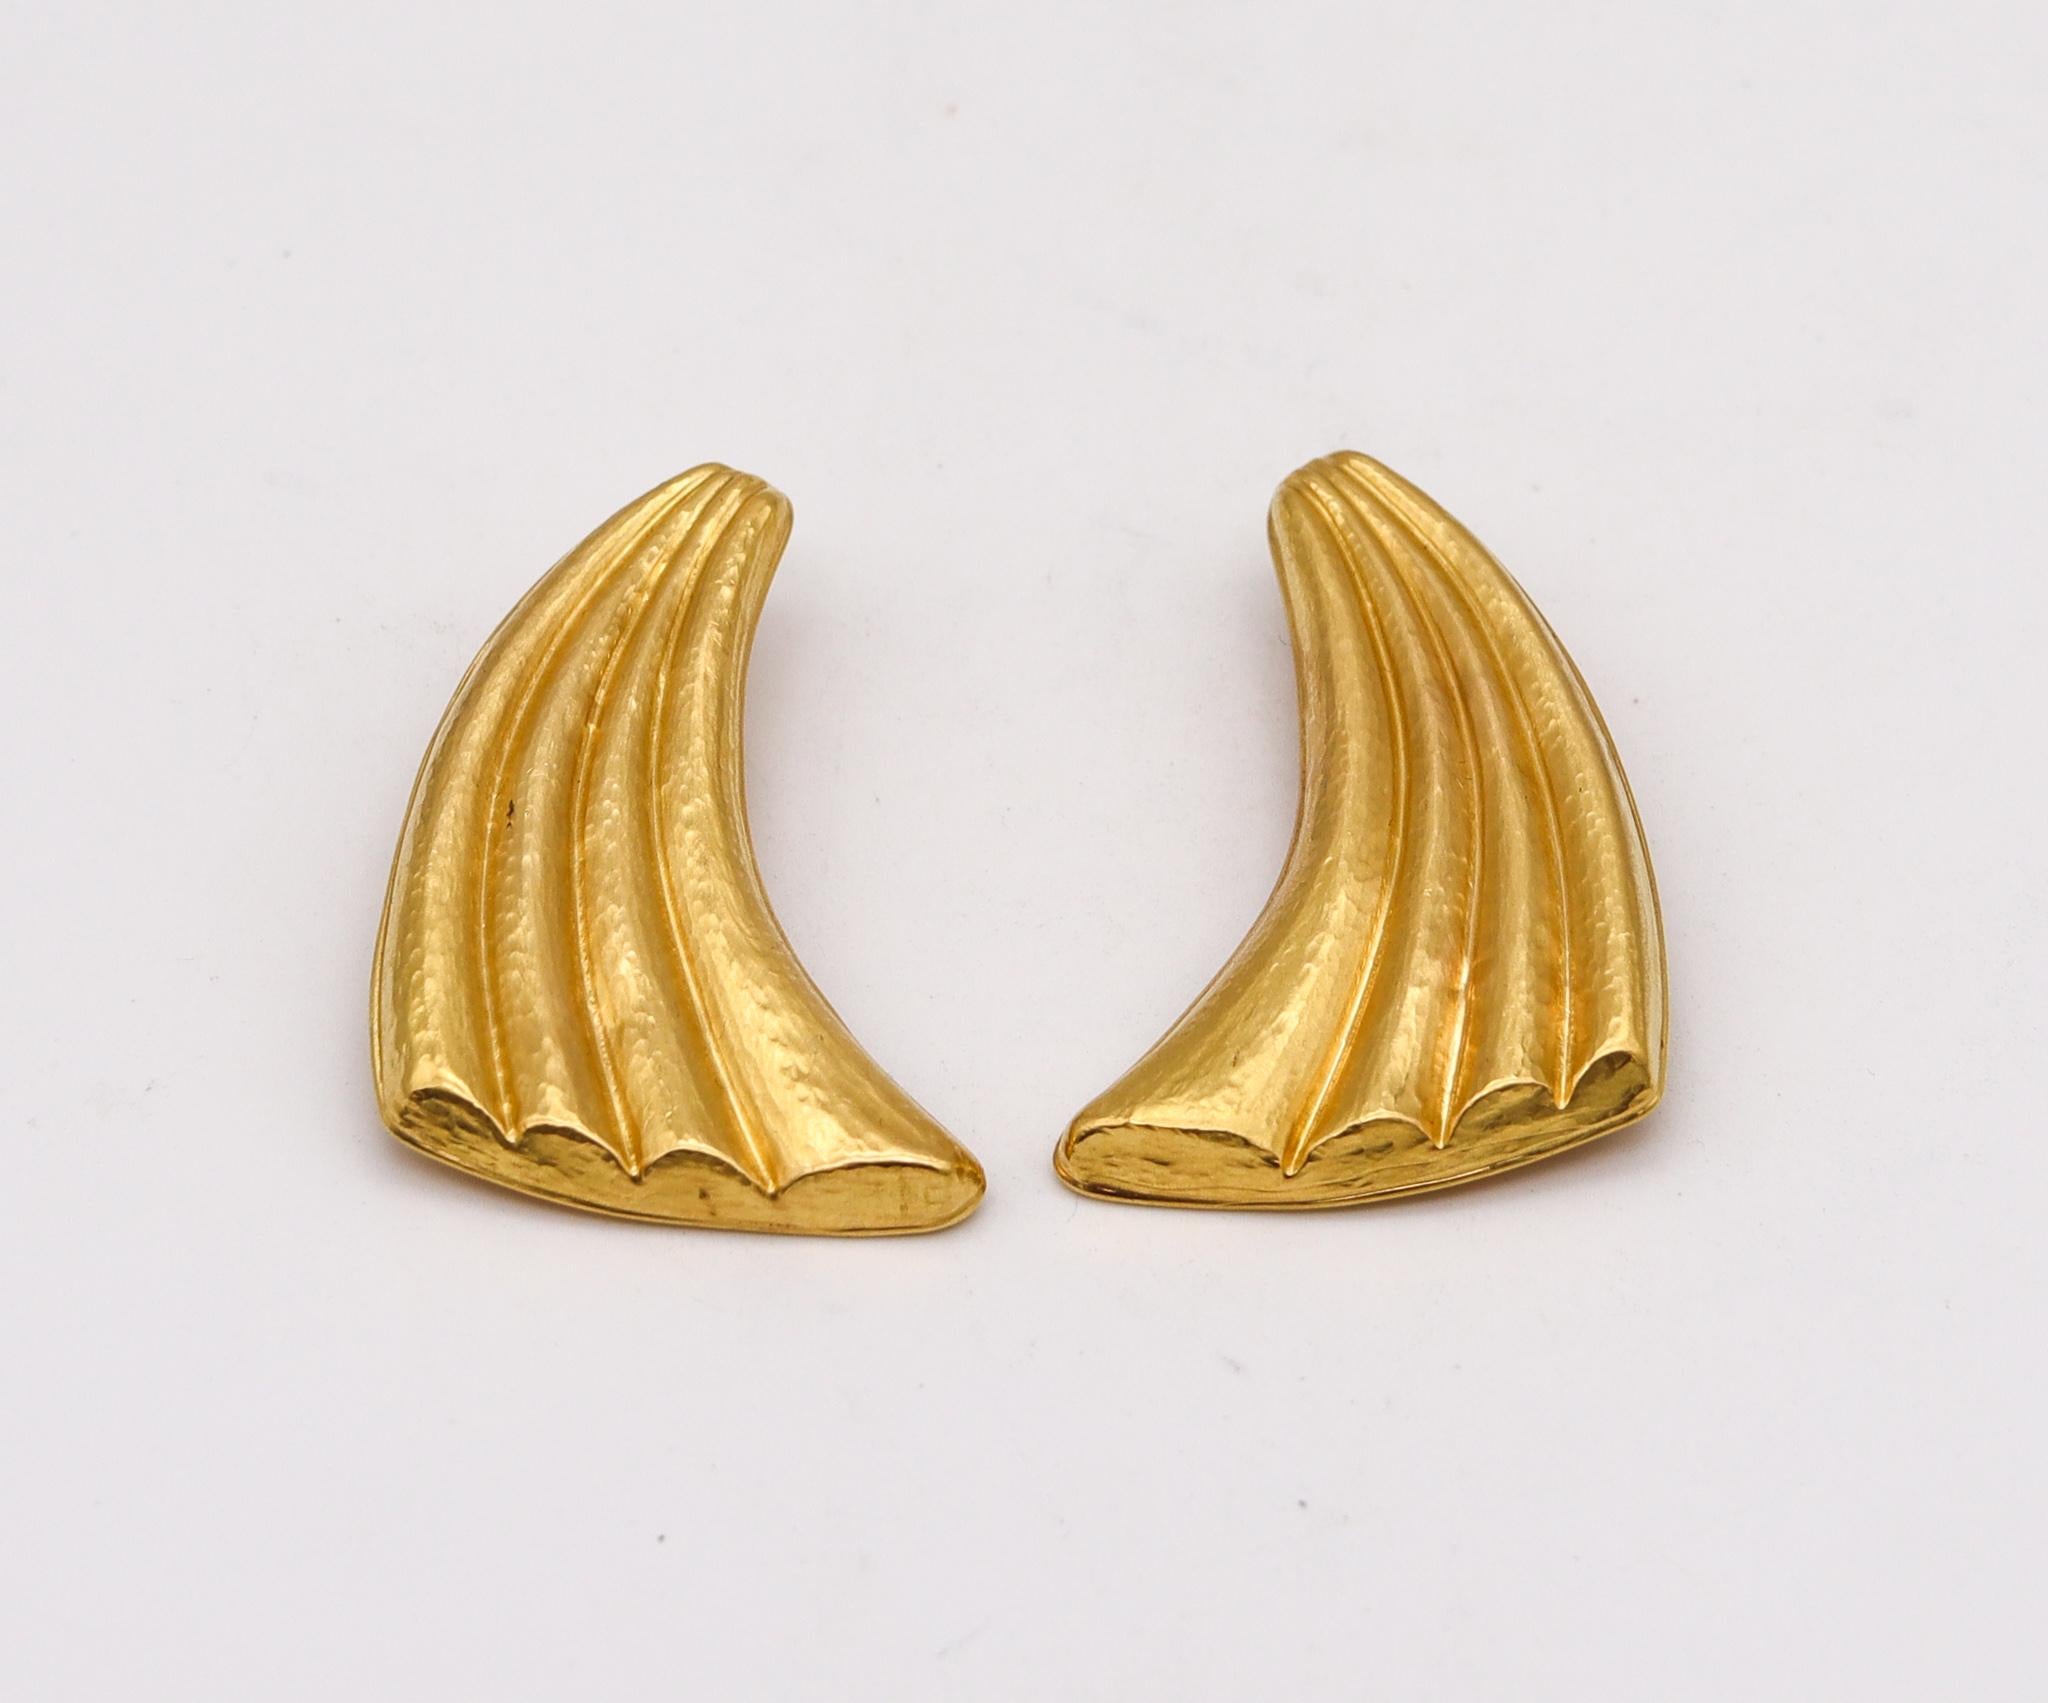 Ein Paar Ohrringe, entworfen von Ilias Lalaounis.

Wunderschöne Ohrringe, die in den 1970er Jahren in Griechenland vom Schmuckhaus Ilias Lalaounis entworfen wurden. Dieses wunderschöne, kühne Paar im Vintage-Stil ist Teil der Kollektion The Dawn Of